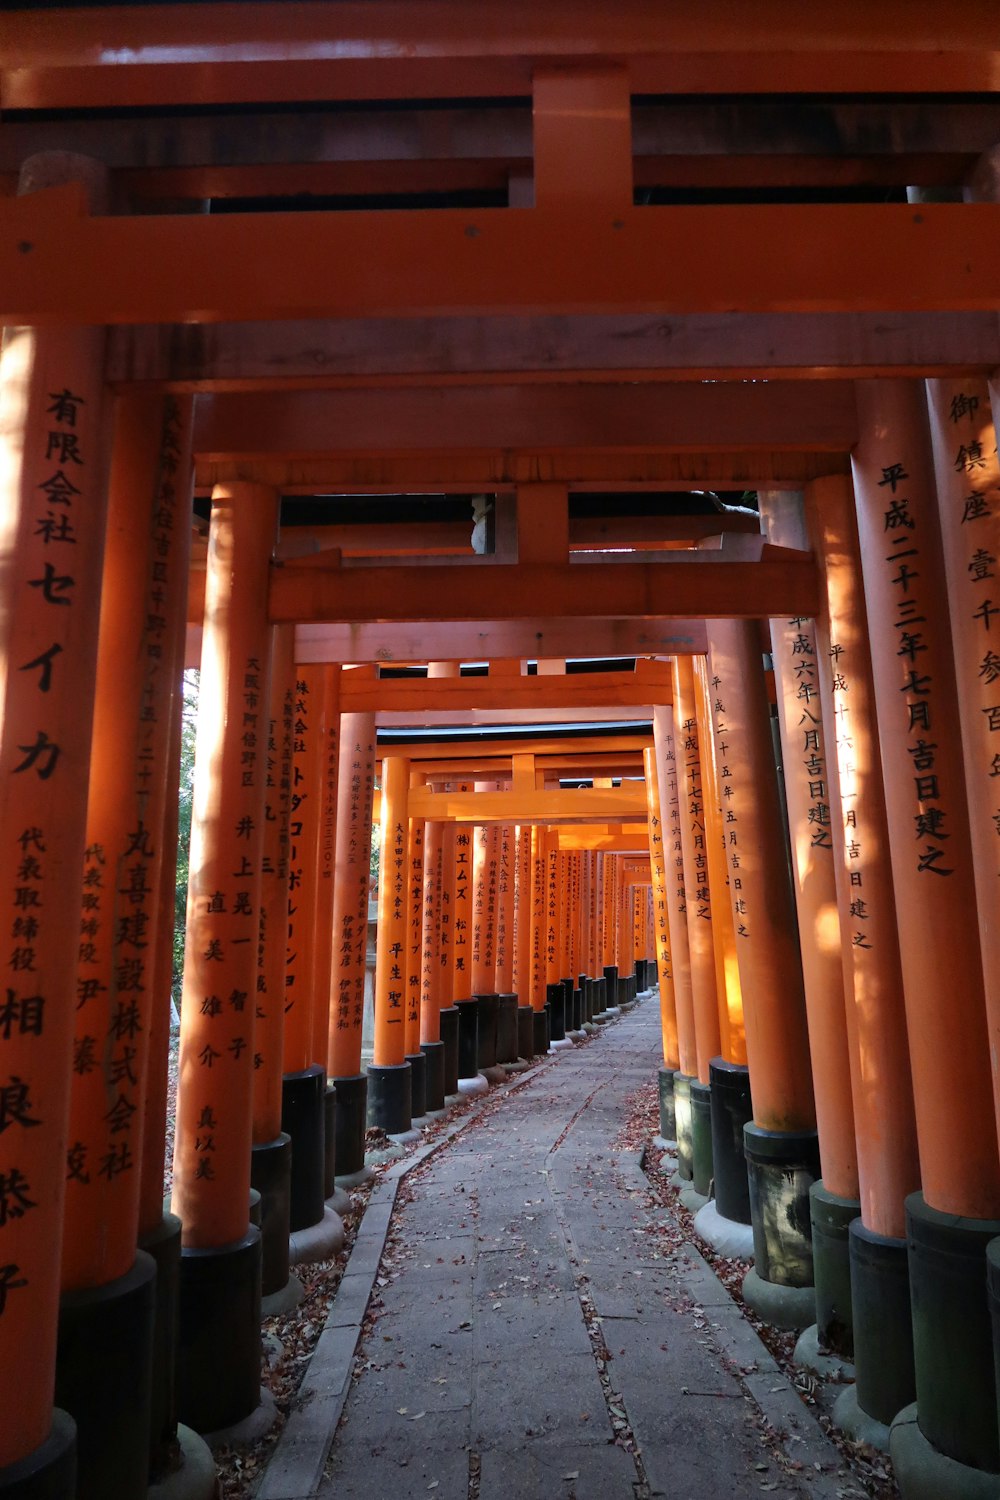 una pasarela bordeada de altos pilares naranjas con inscripciones en ellos